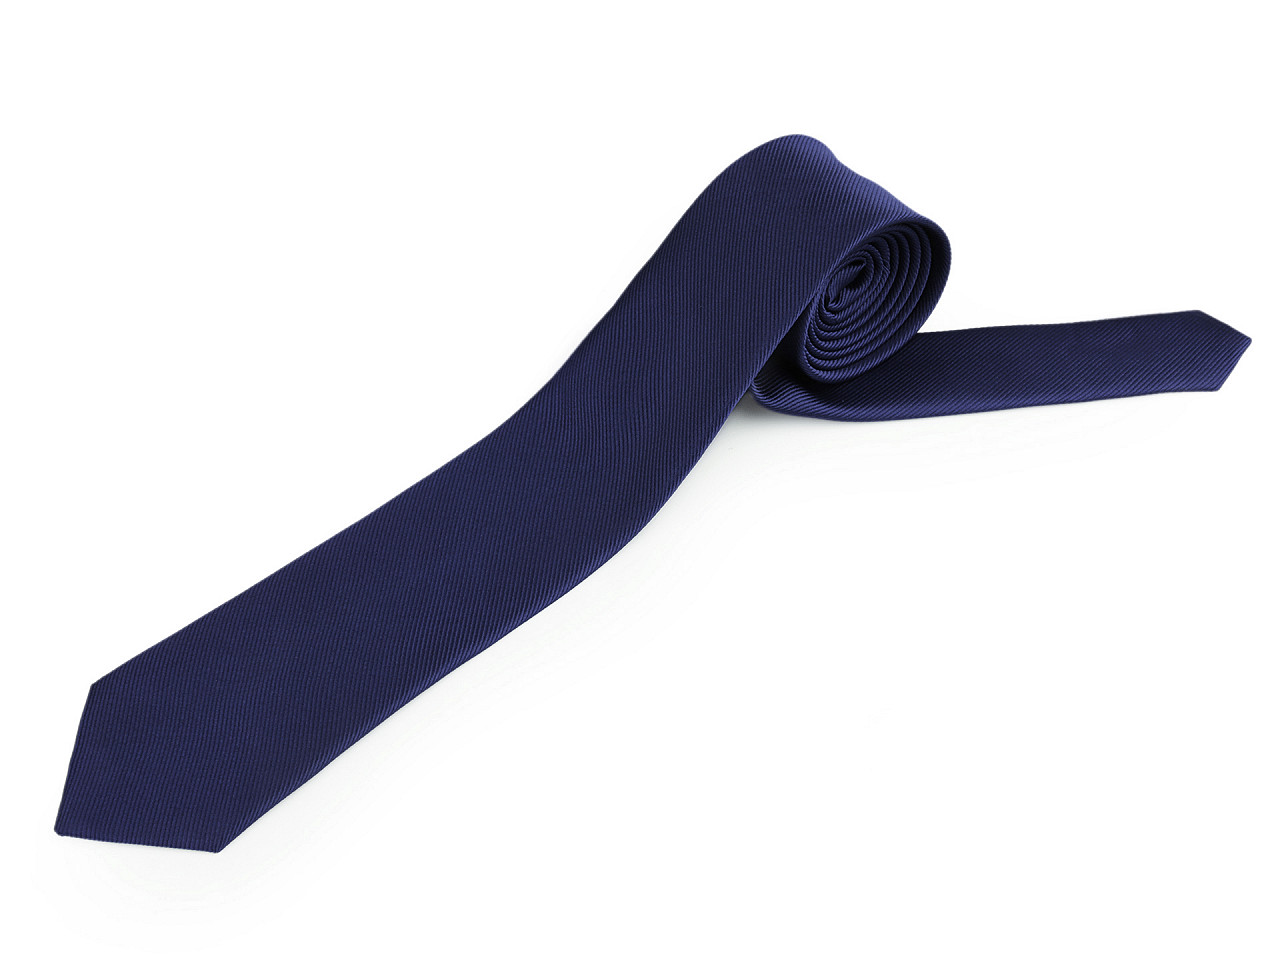 Mikrofaser-Krawatte, einfarbig, dunkelblau, 1 Stück